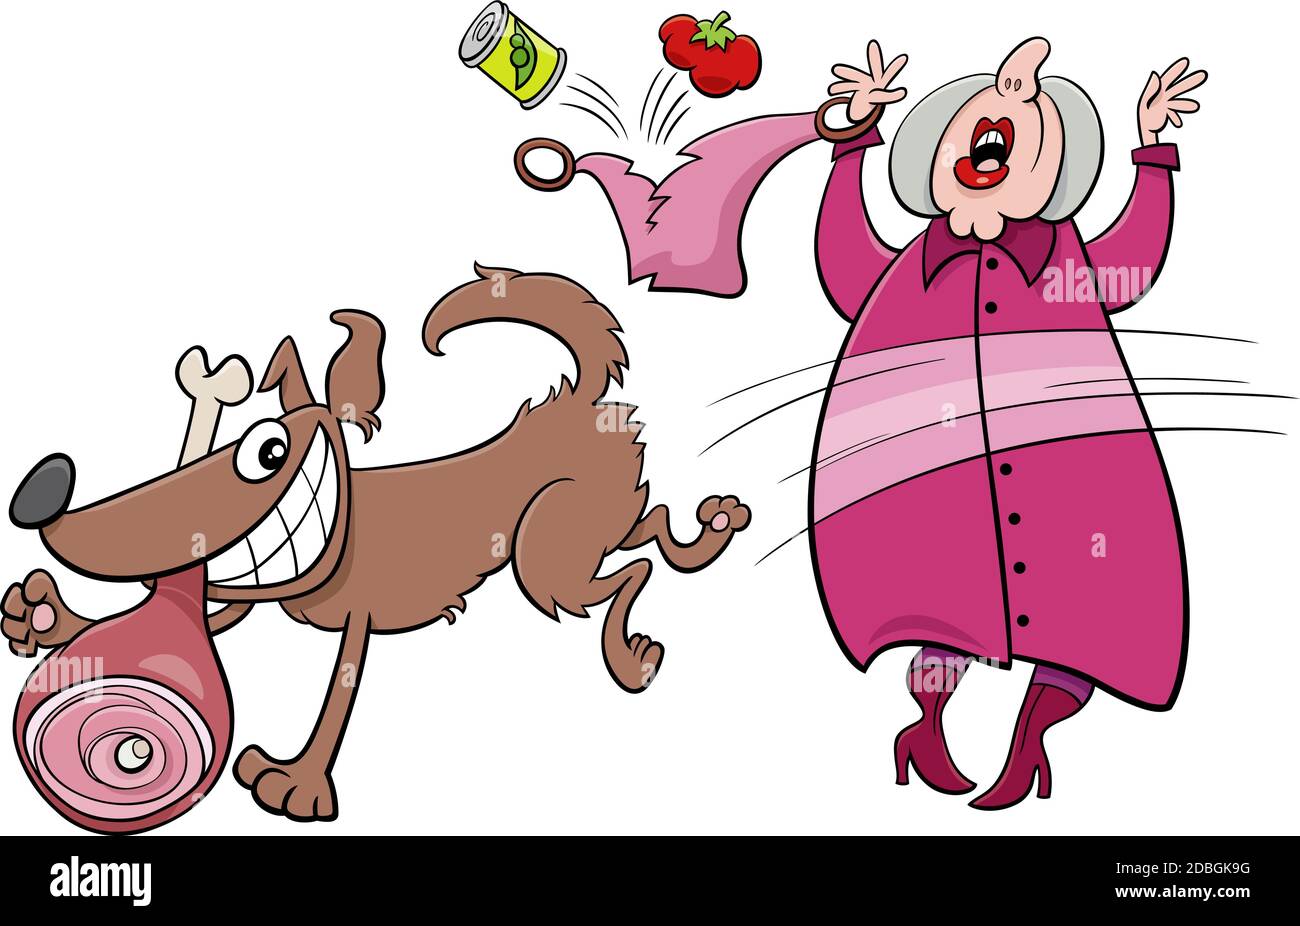 Illustration de dessin animé de chien méchant drôle de jambon d'un vieille dame Illustration de Vecteur